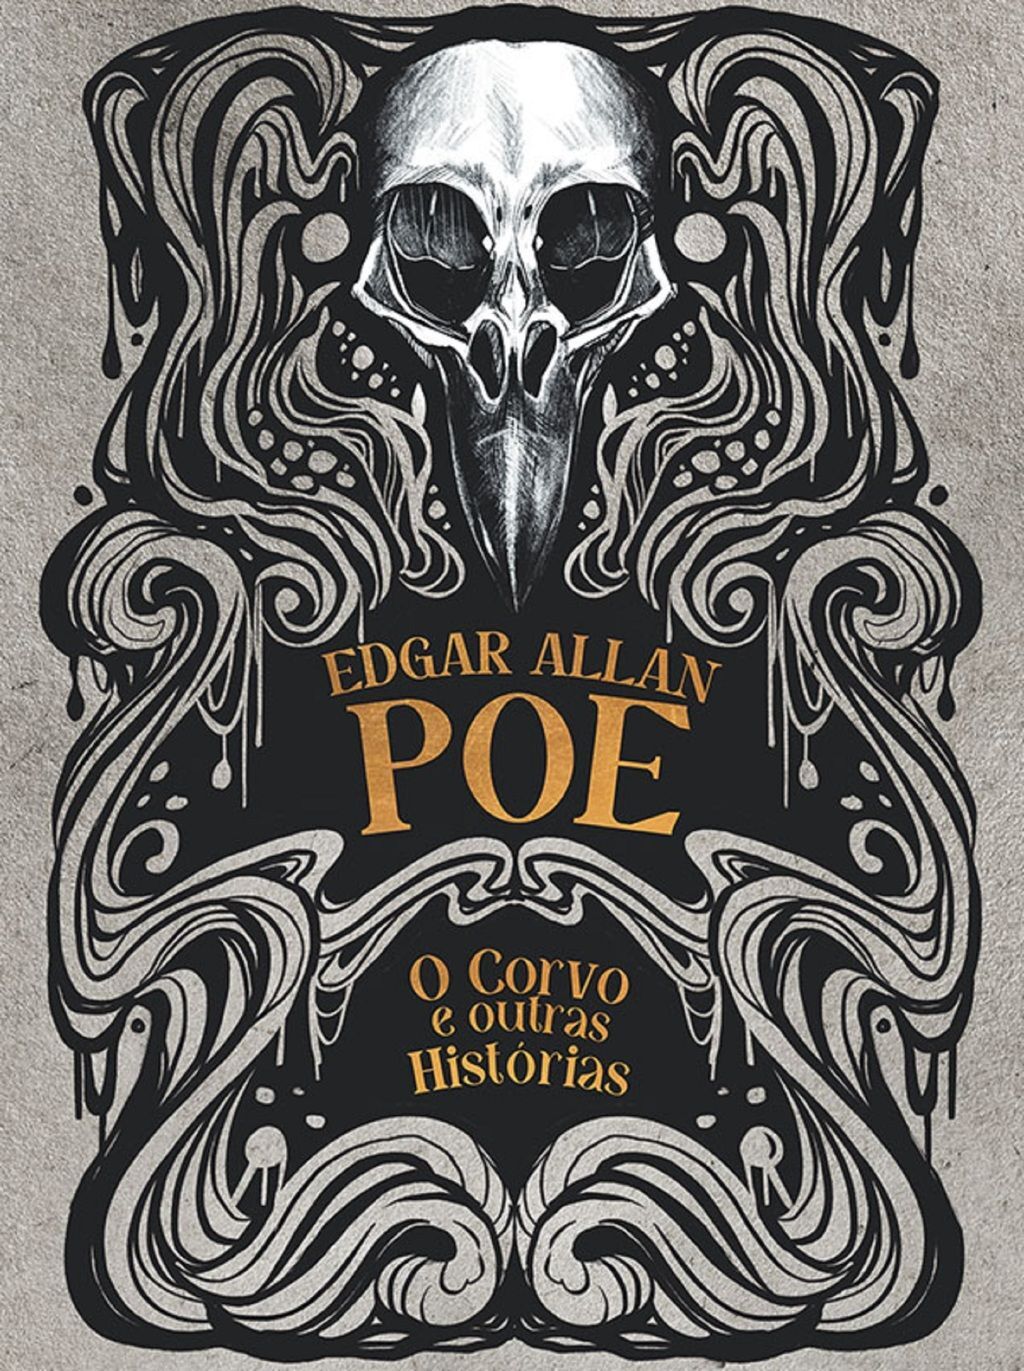 Edgar Allan Poe  1870 L i v r o s